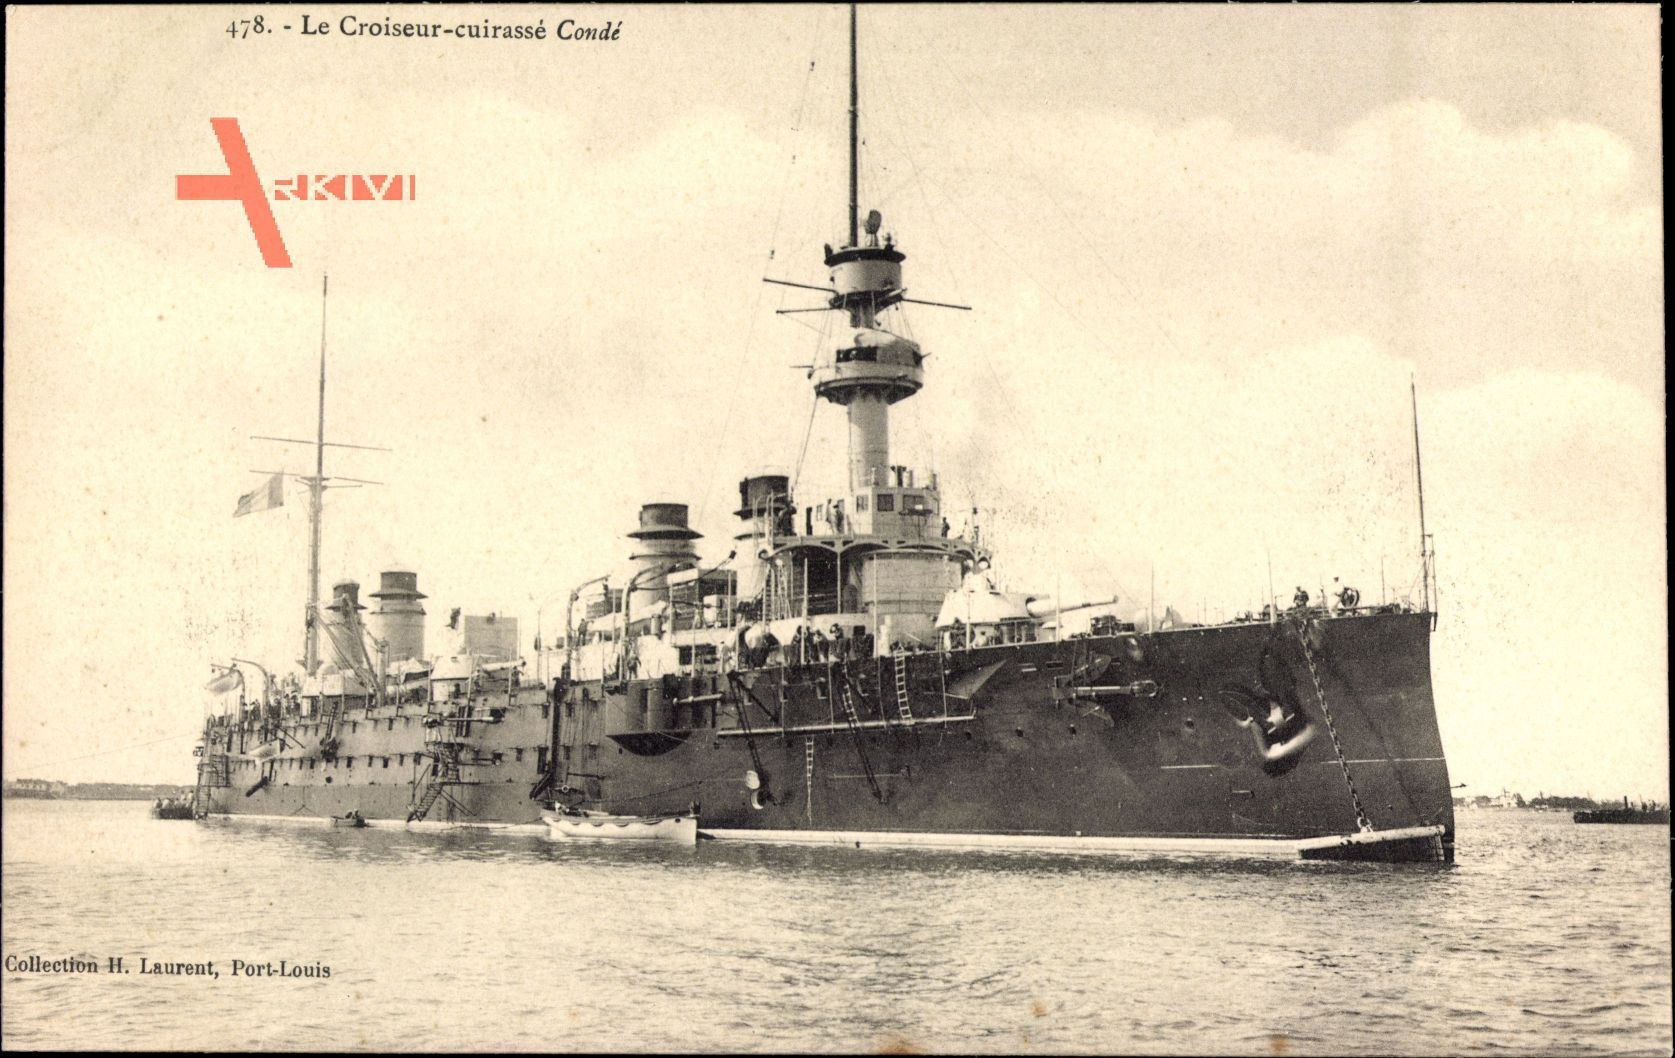 Französisches Kriegsschiff, Le Croiseur cuirassé, Condé